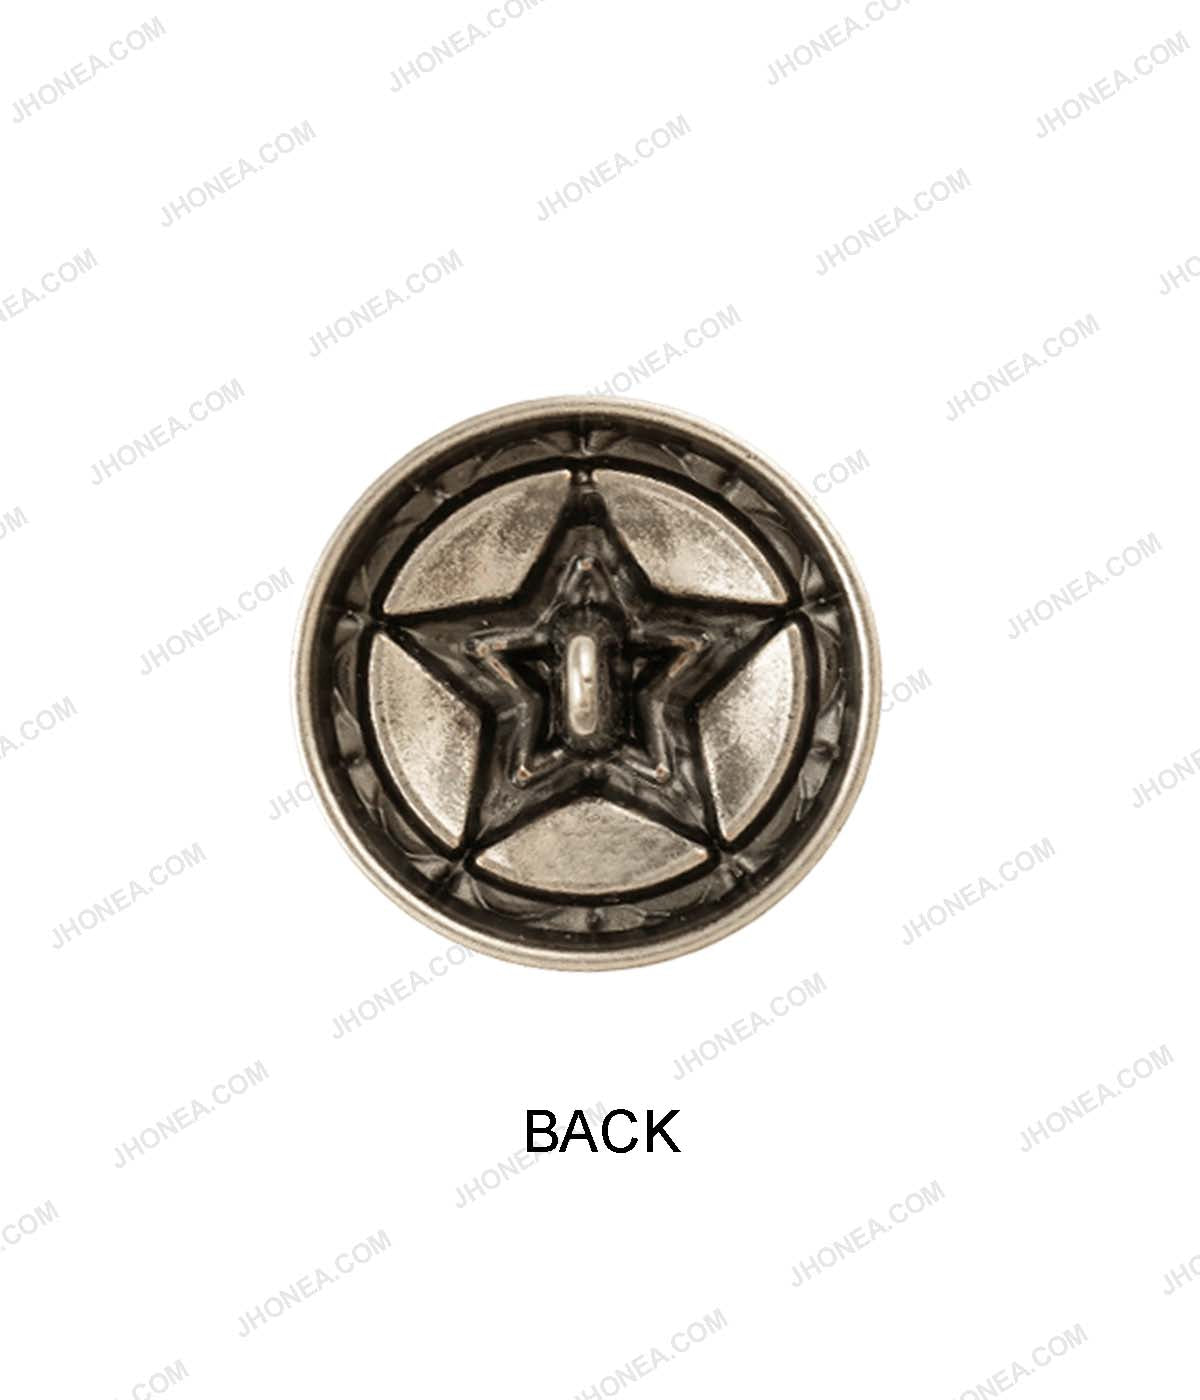 Premium Antique Vintage Star Design Metal Buttons for Coats